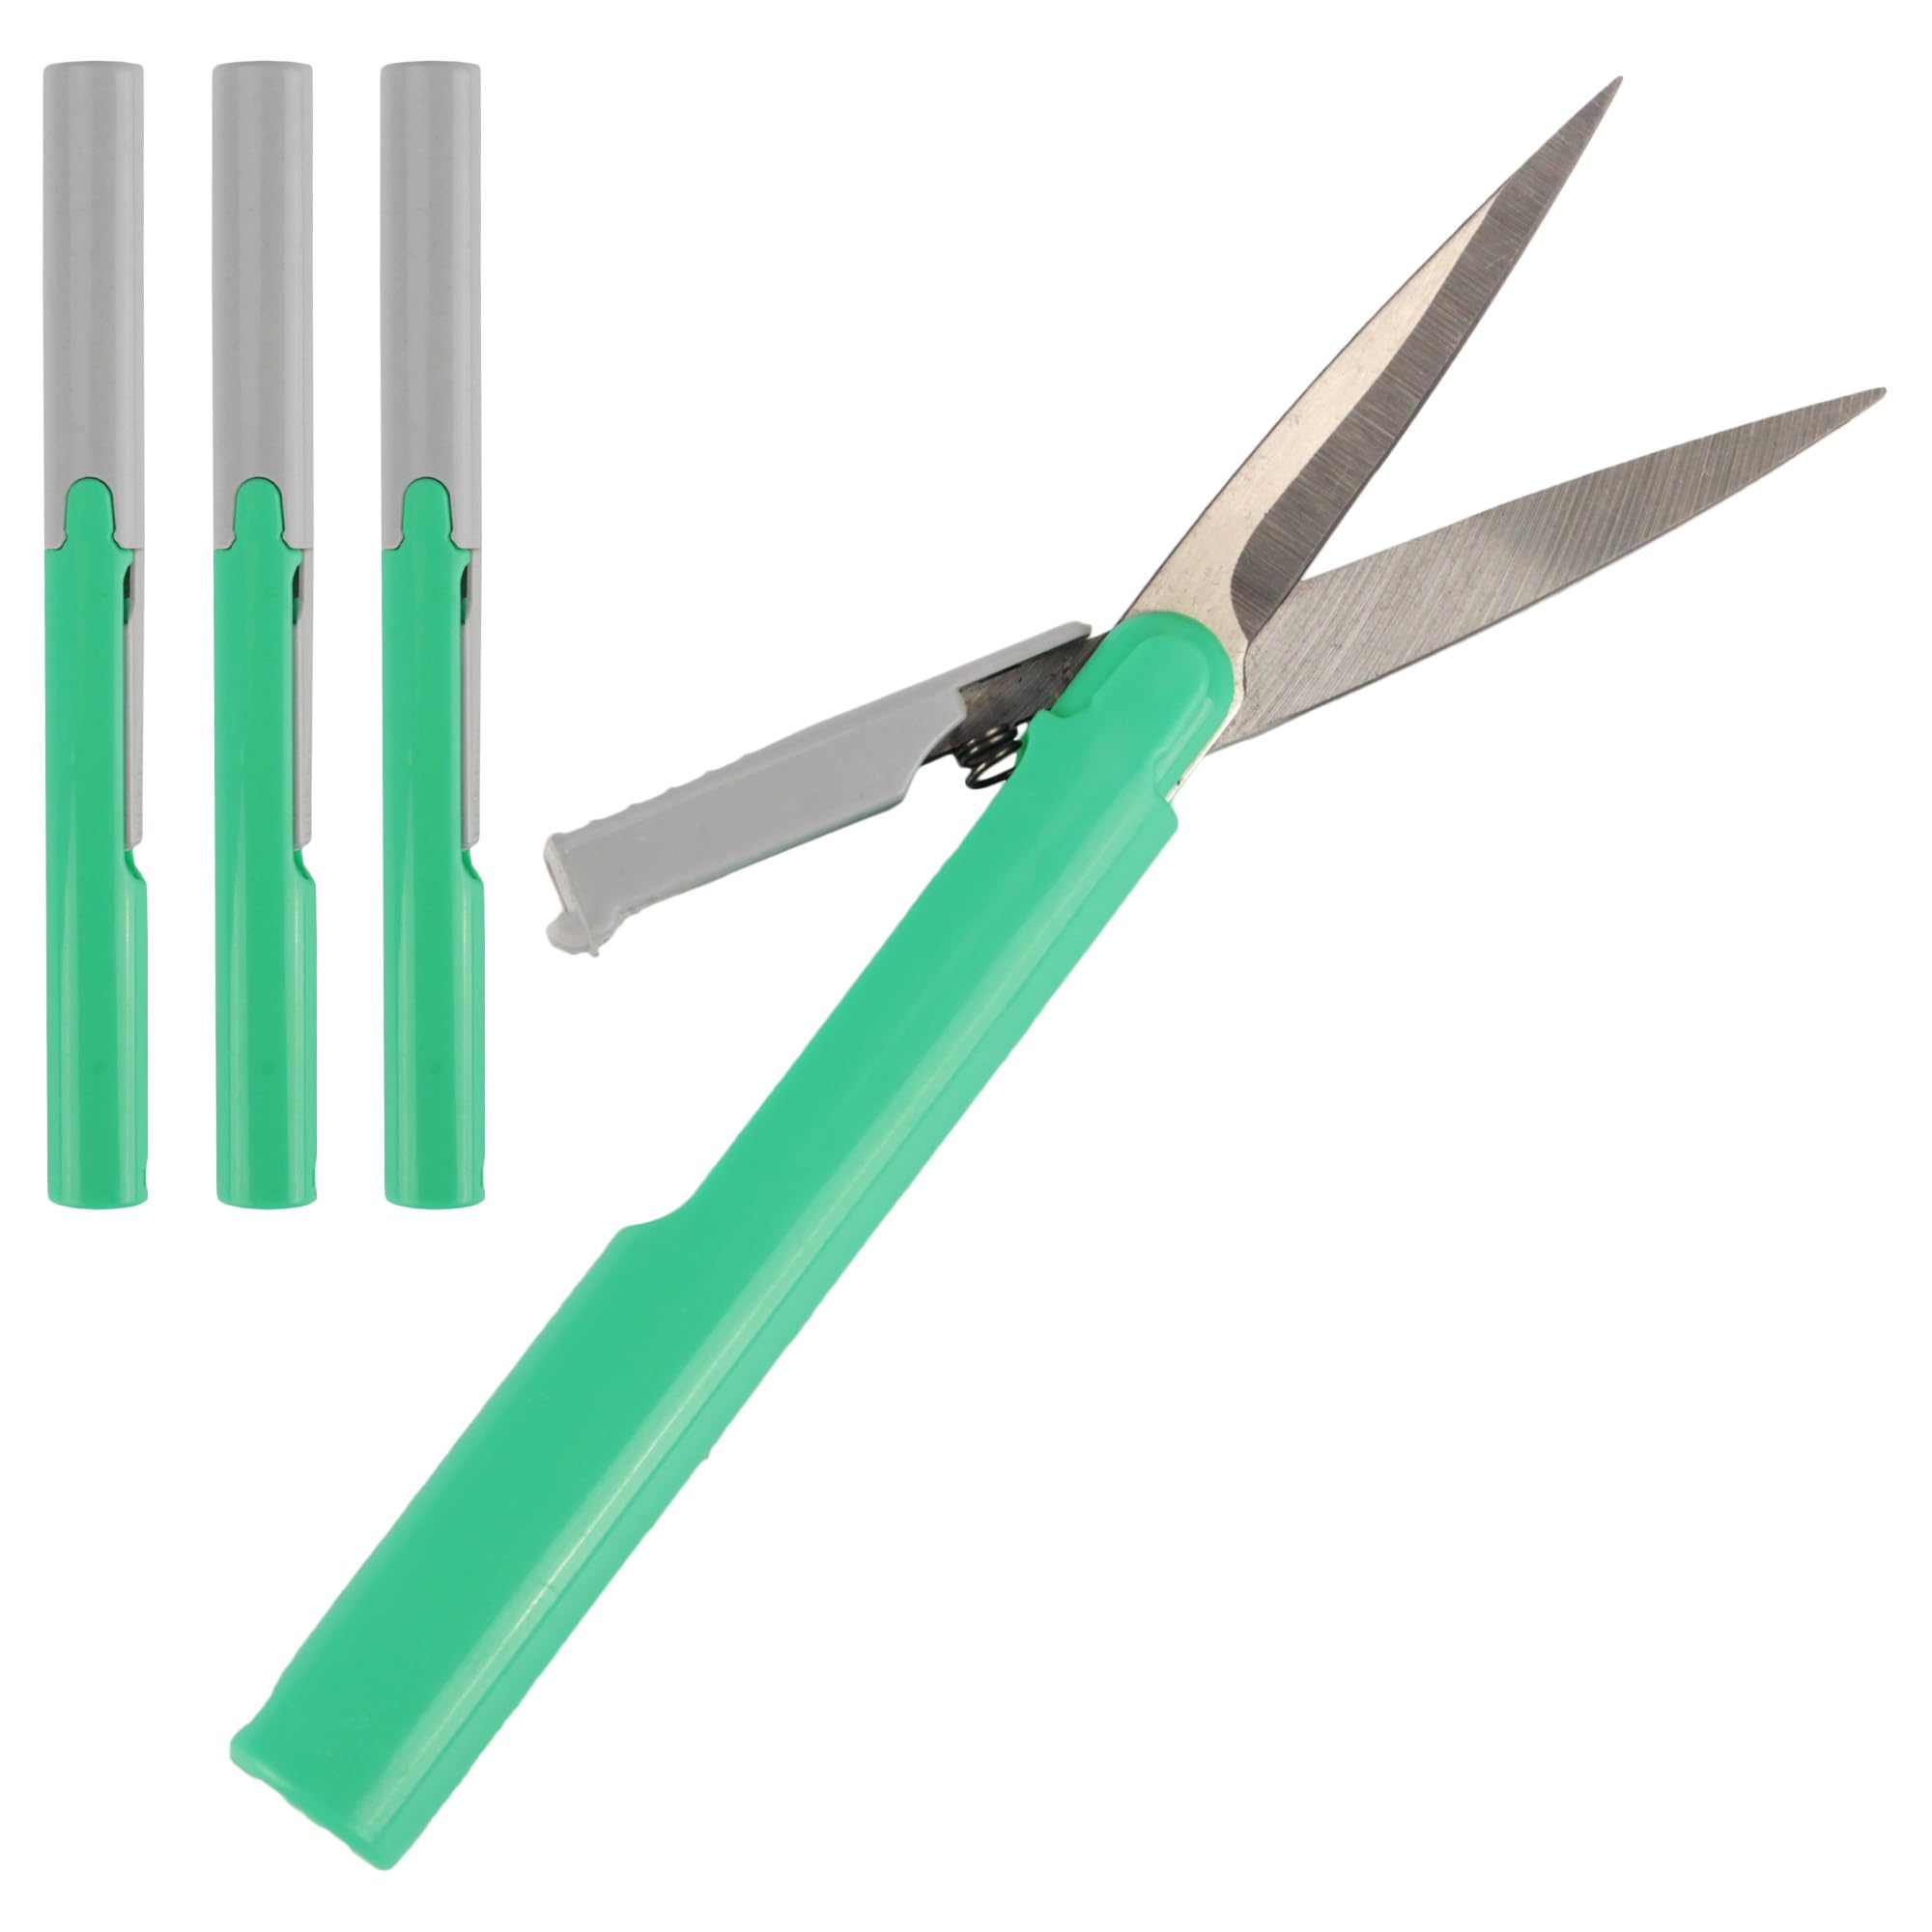 BambooMN Penblade Reiseschere, Stift-Stil, tragbar, Grün, 3 Paar